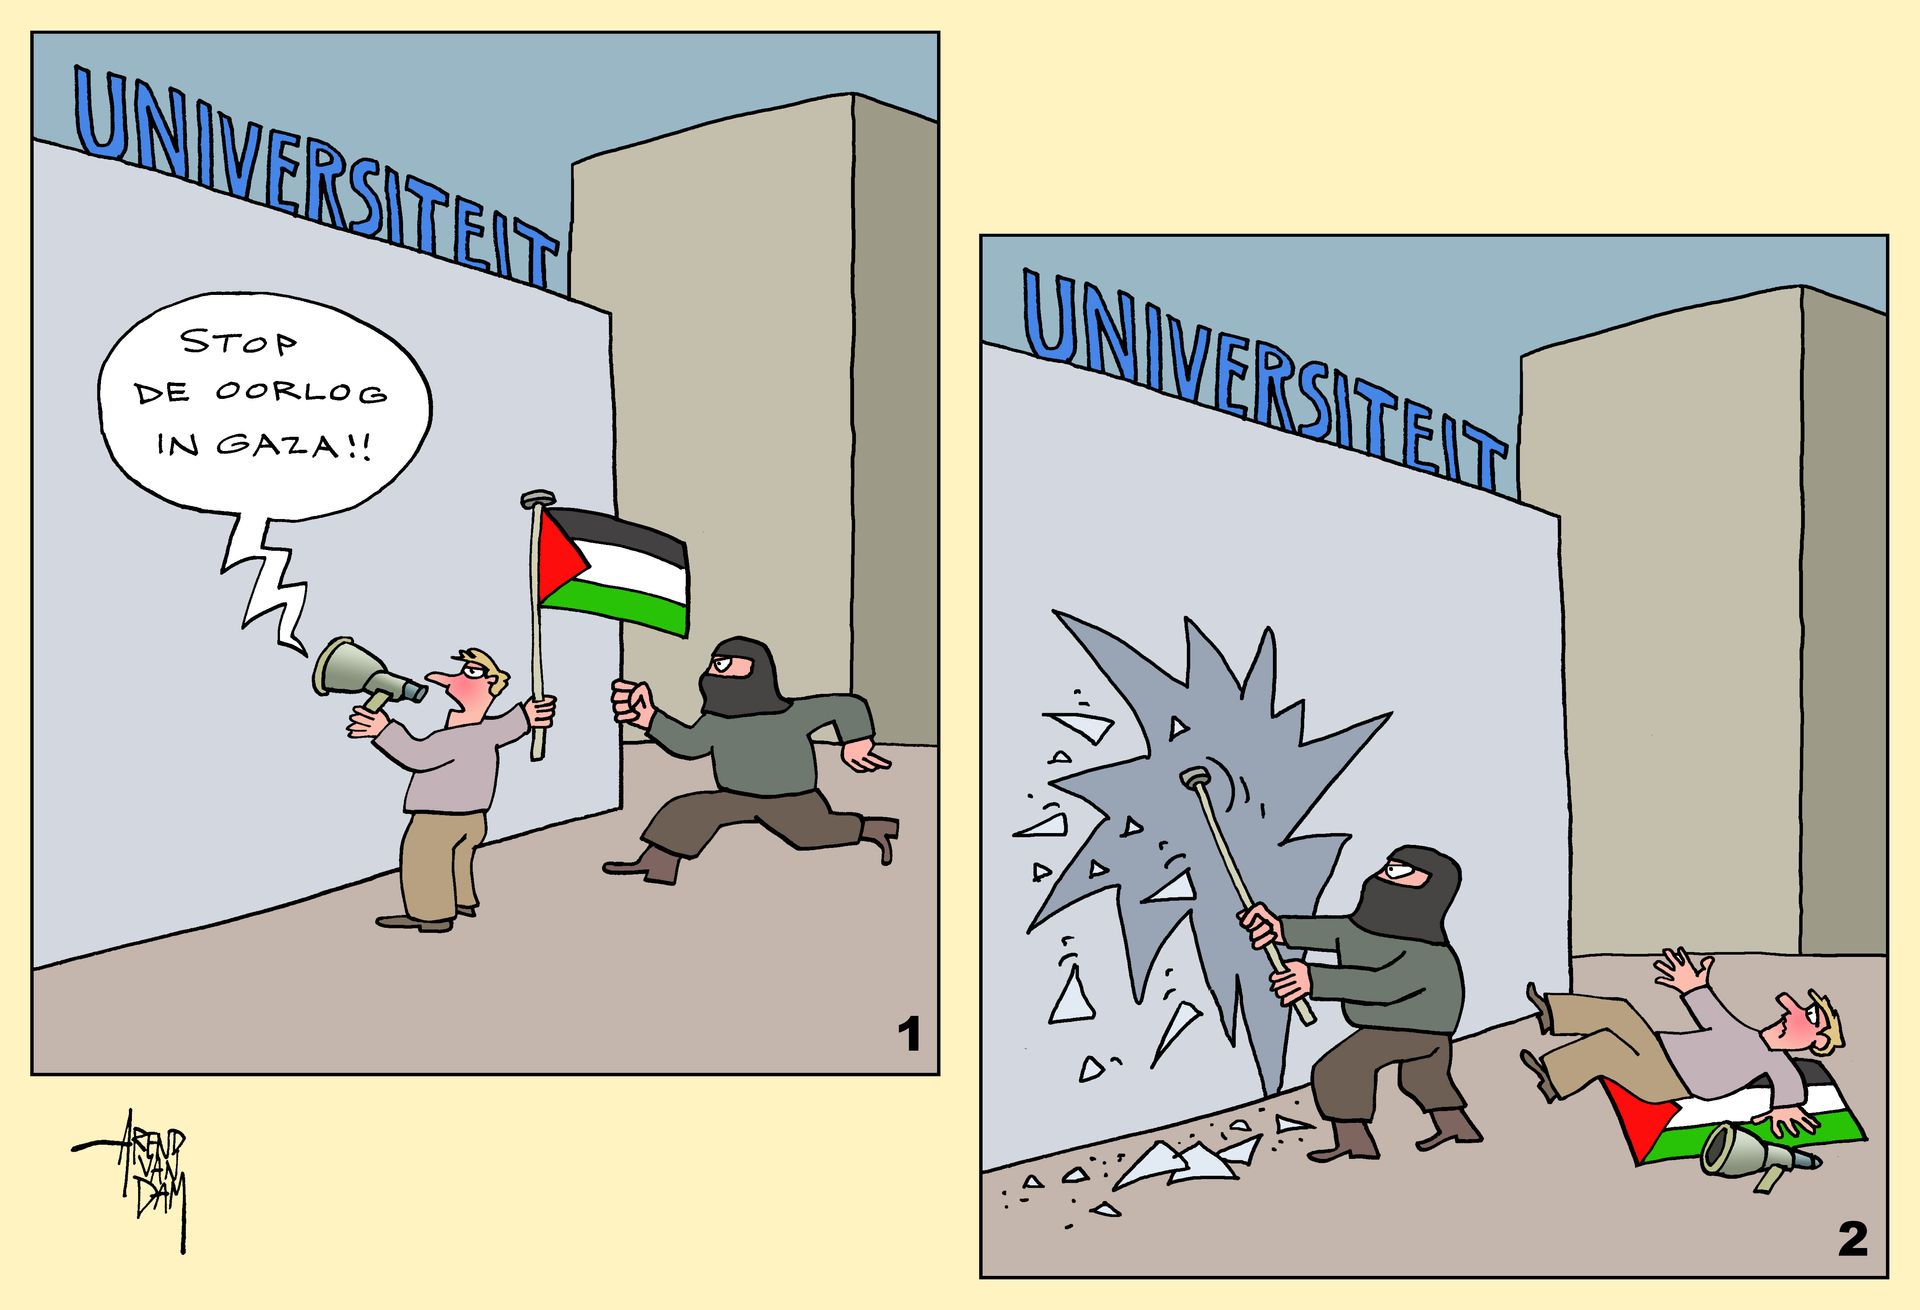 GazaProtesten&Universiteit+